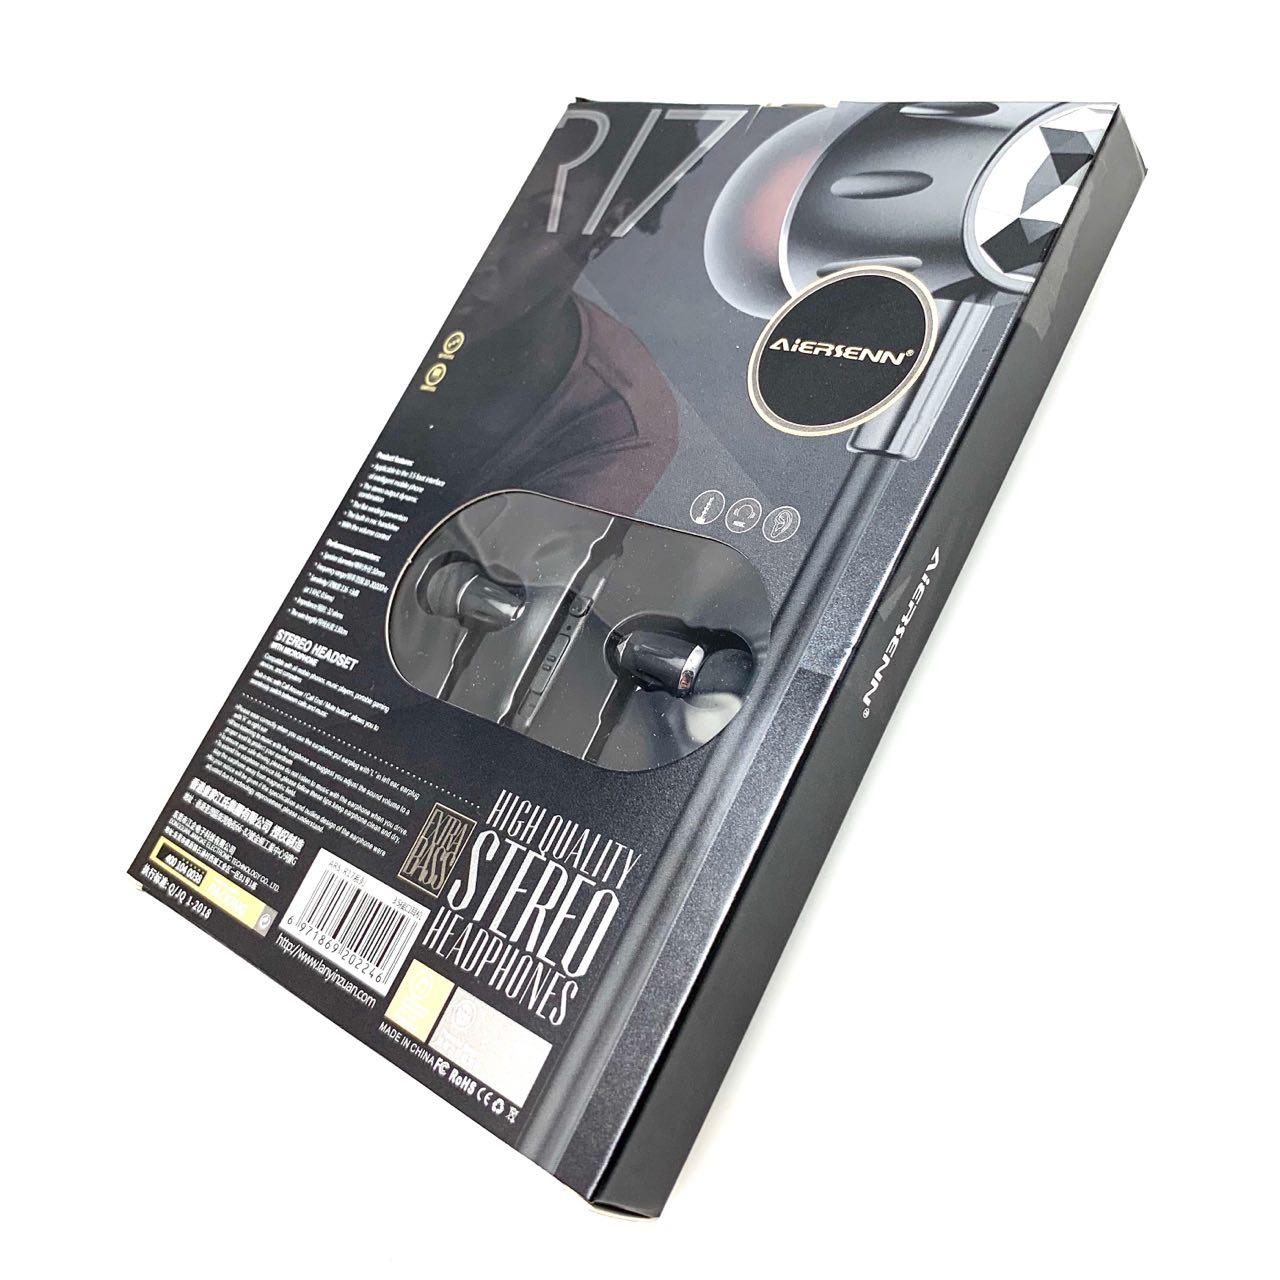 Гарнитура (наушники с микрофоном) проводная, AIRSENN ARS-R17, цвет черный.